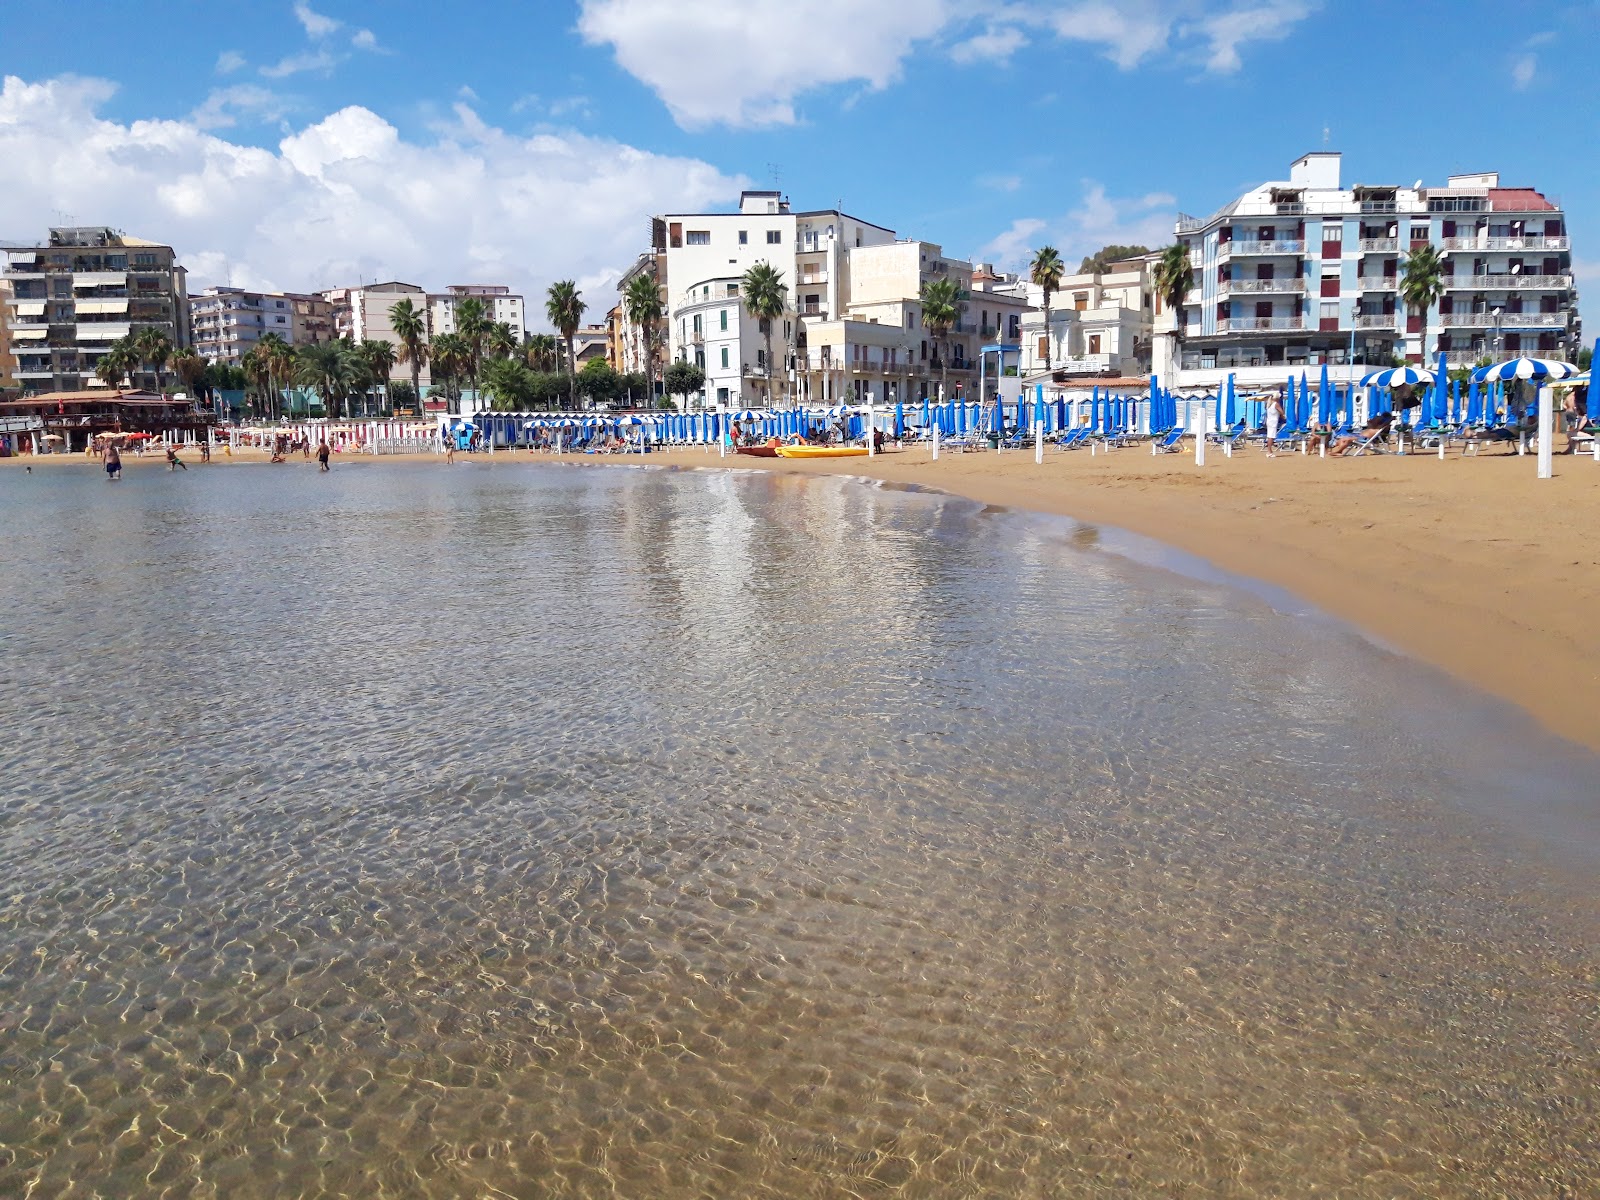 Crotone beach'in fotoğrafı geniş plaj ile birlikte